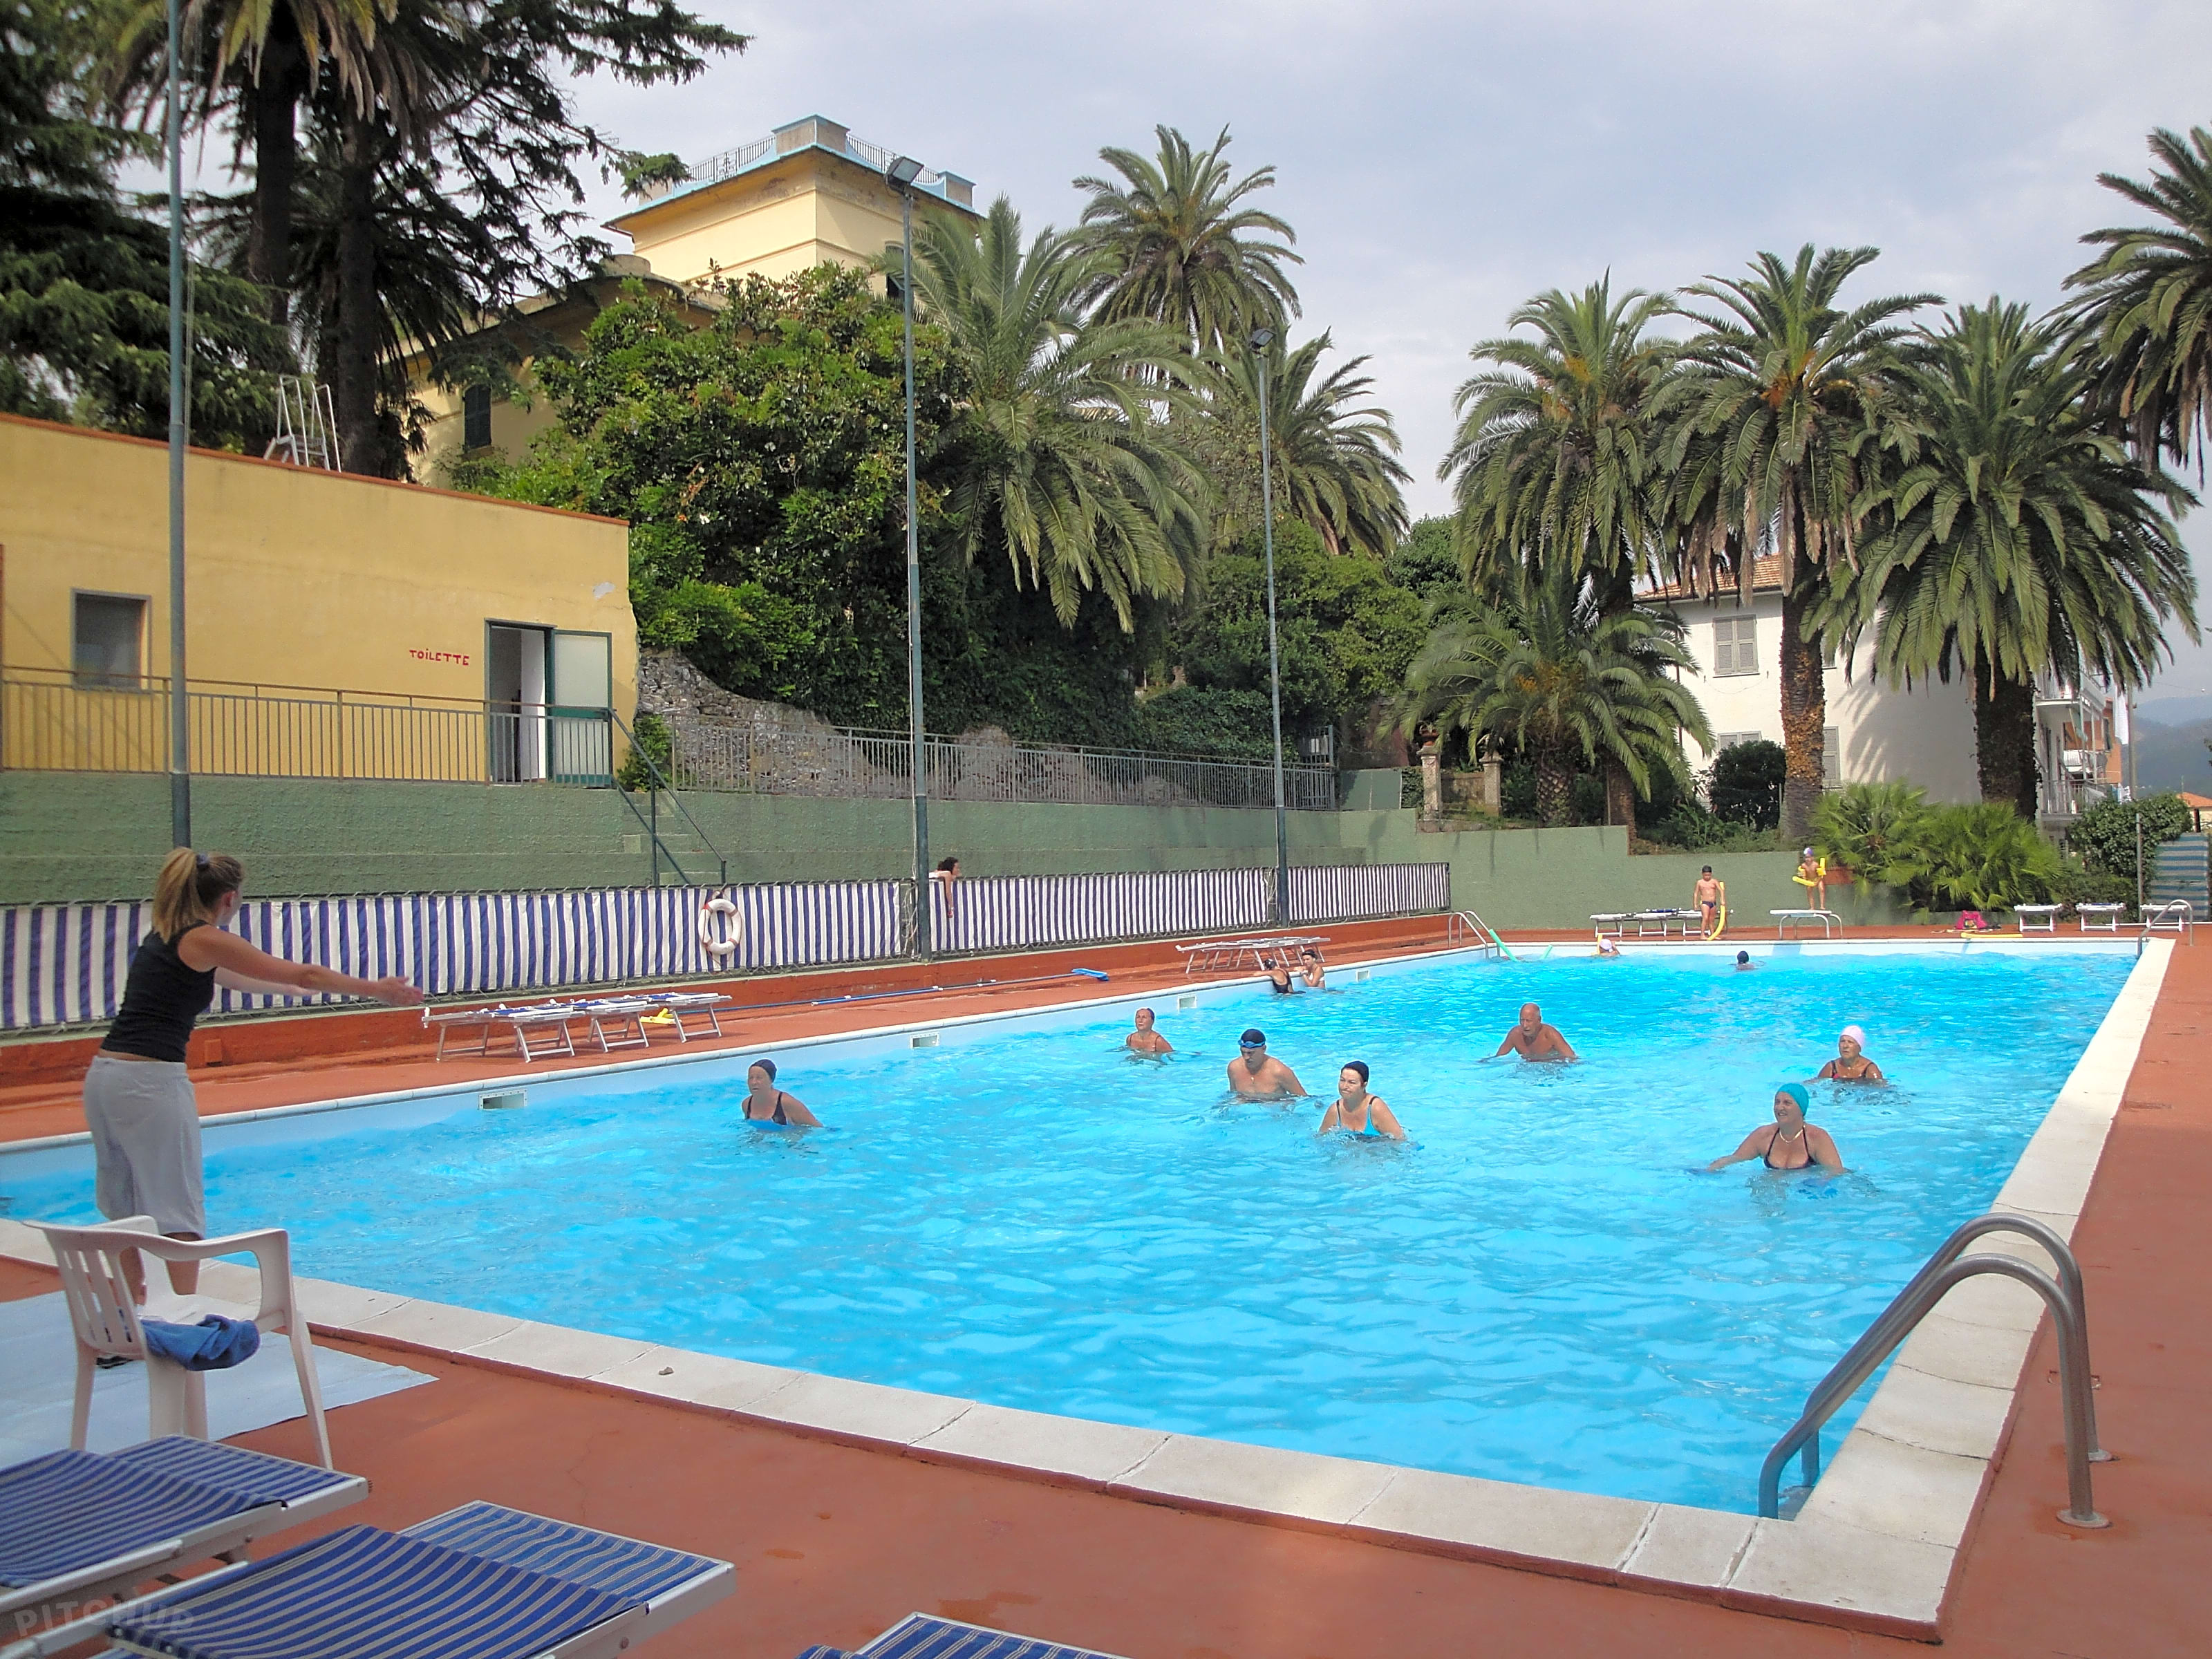 Tigullio Camping and Resort, Sestri Levante - Updated 2020 prices ...